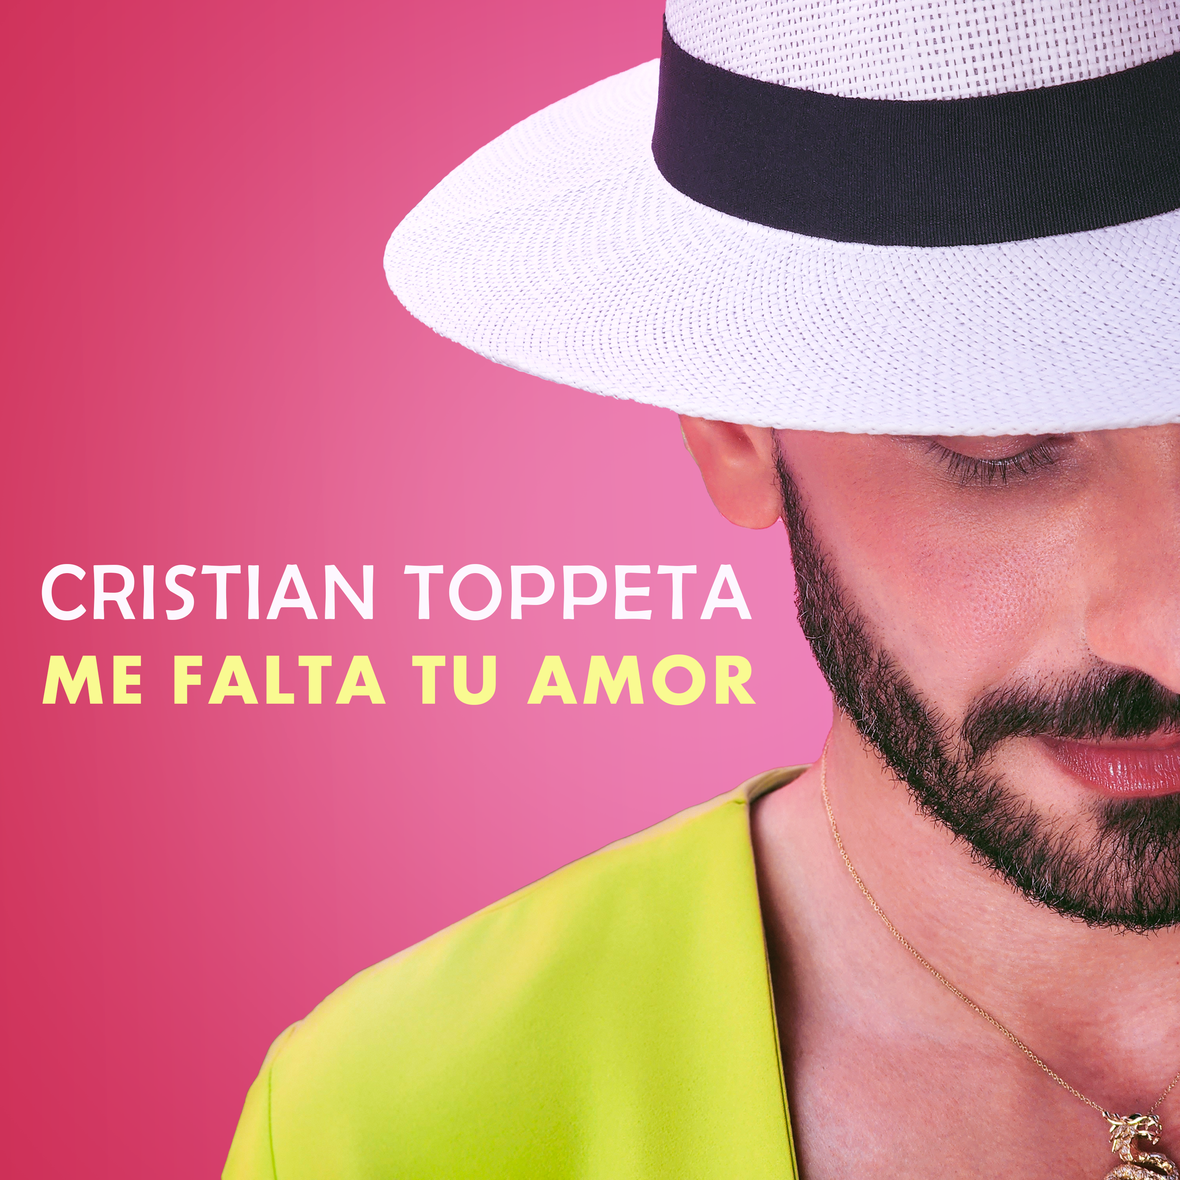 CRISTIAN TOPPETA lanza tema “Me falta tu amor”